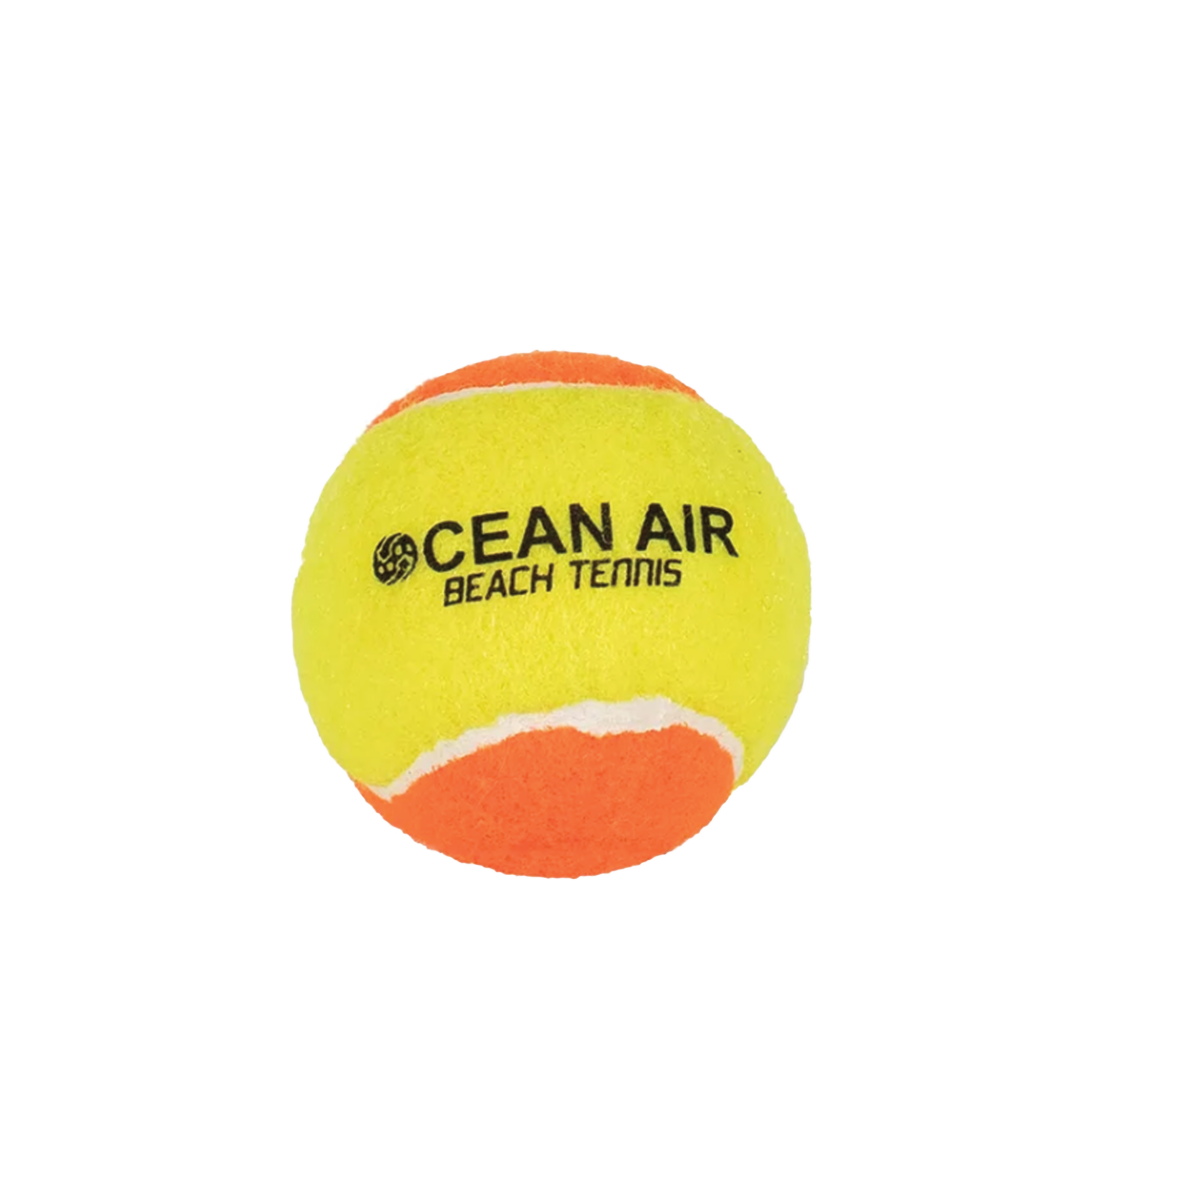 Ocean Air Beach Tennis Ball - 60 Pack